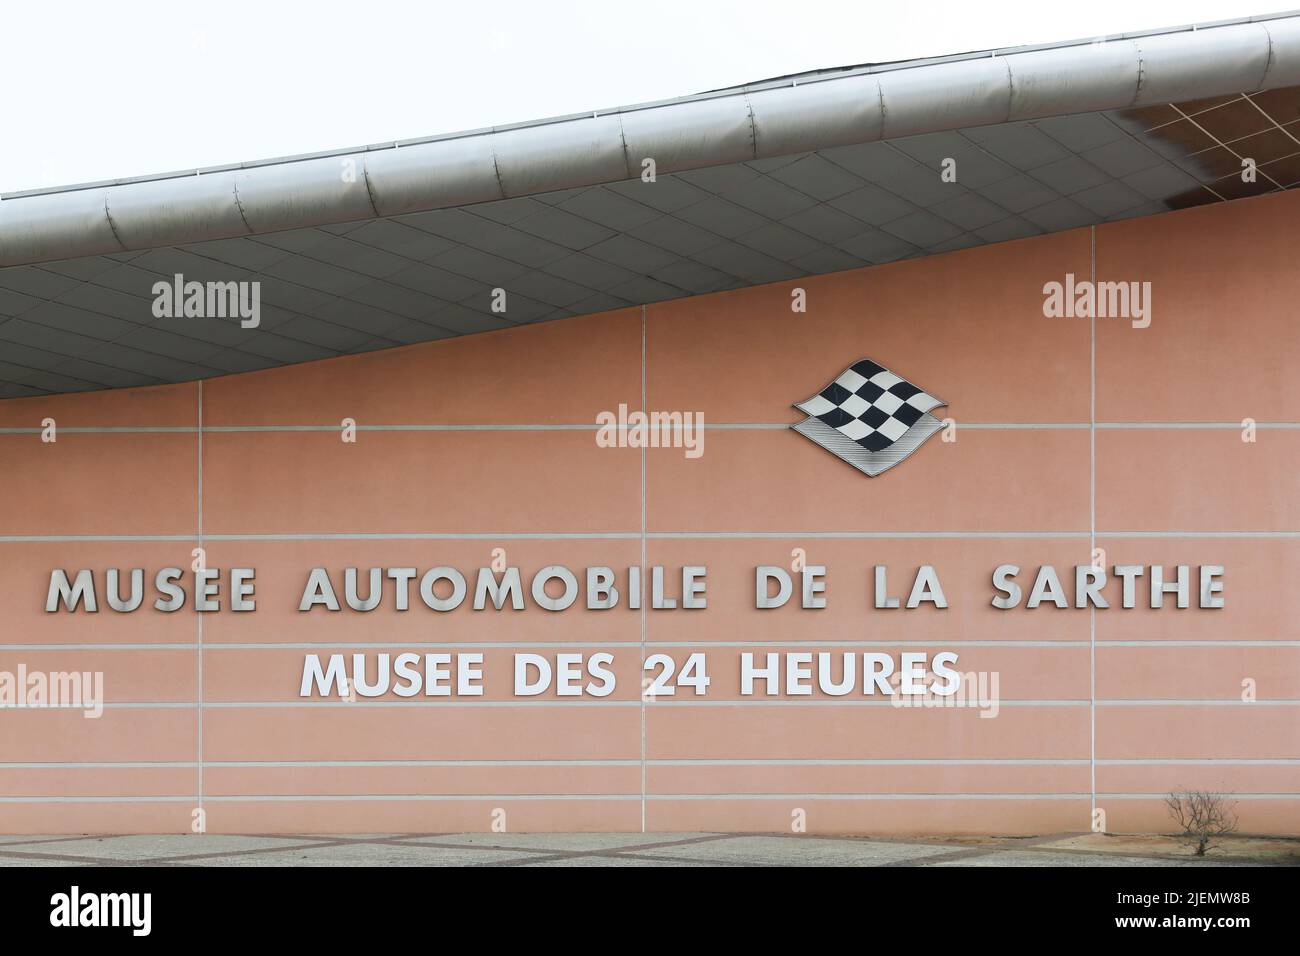 Le Mans, Francia - 21 de marzo de 2015: El Museo de las 24 Horas de Le Mans. El Museo de las 24 horas de Le Mans es un museo de deportes de motor Foto de stock